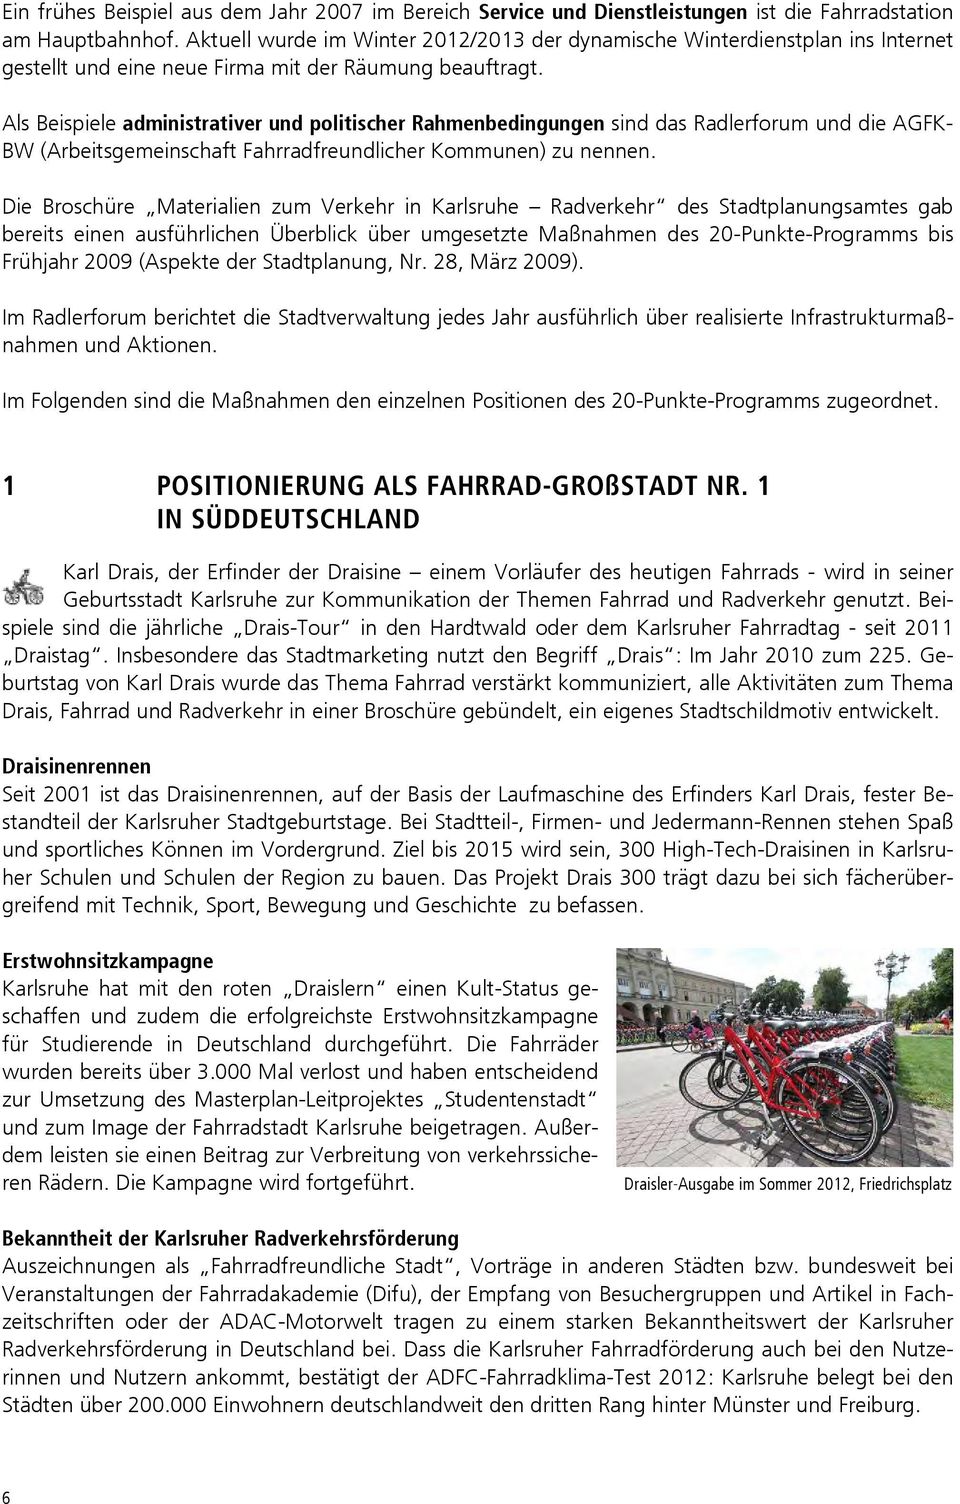 Als Beispiele administrativer und politischer Rahmenbedingungen sind das Radlerforum und die AGFK- BW (Arbeitsgemeinschaft Fahrradfreundlicher Kommunen) zu nennen.